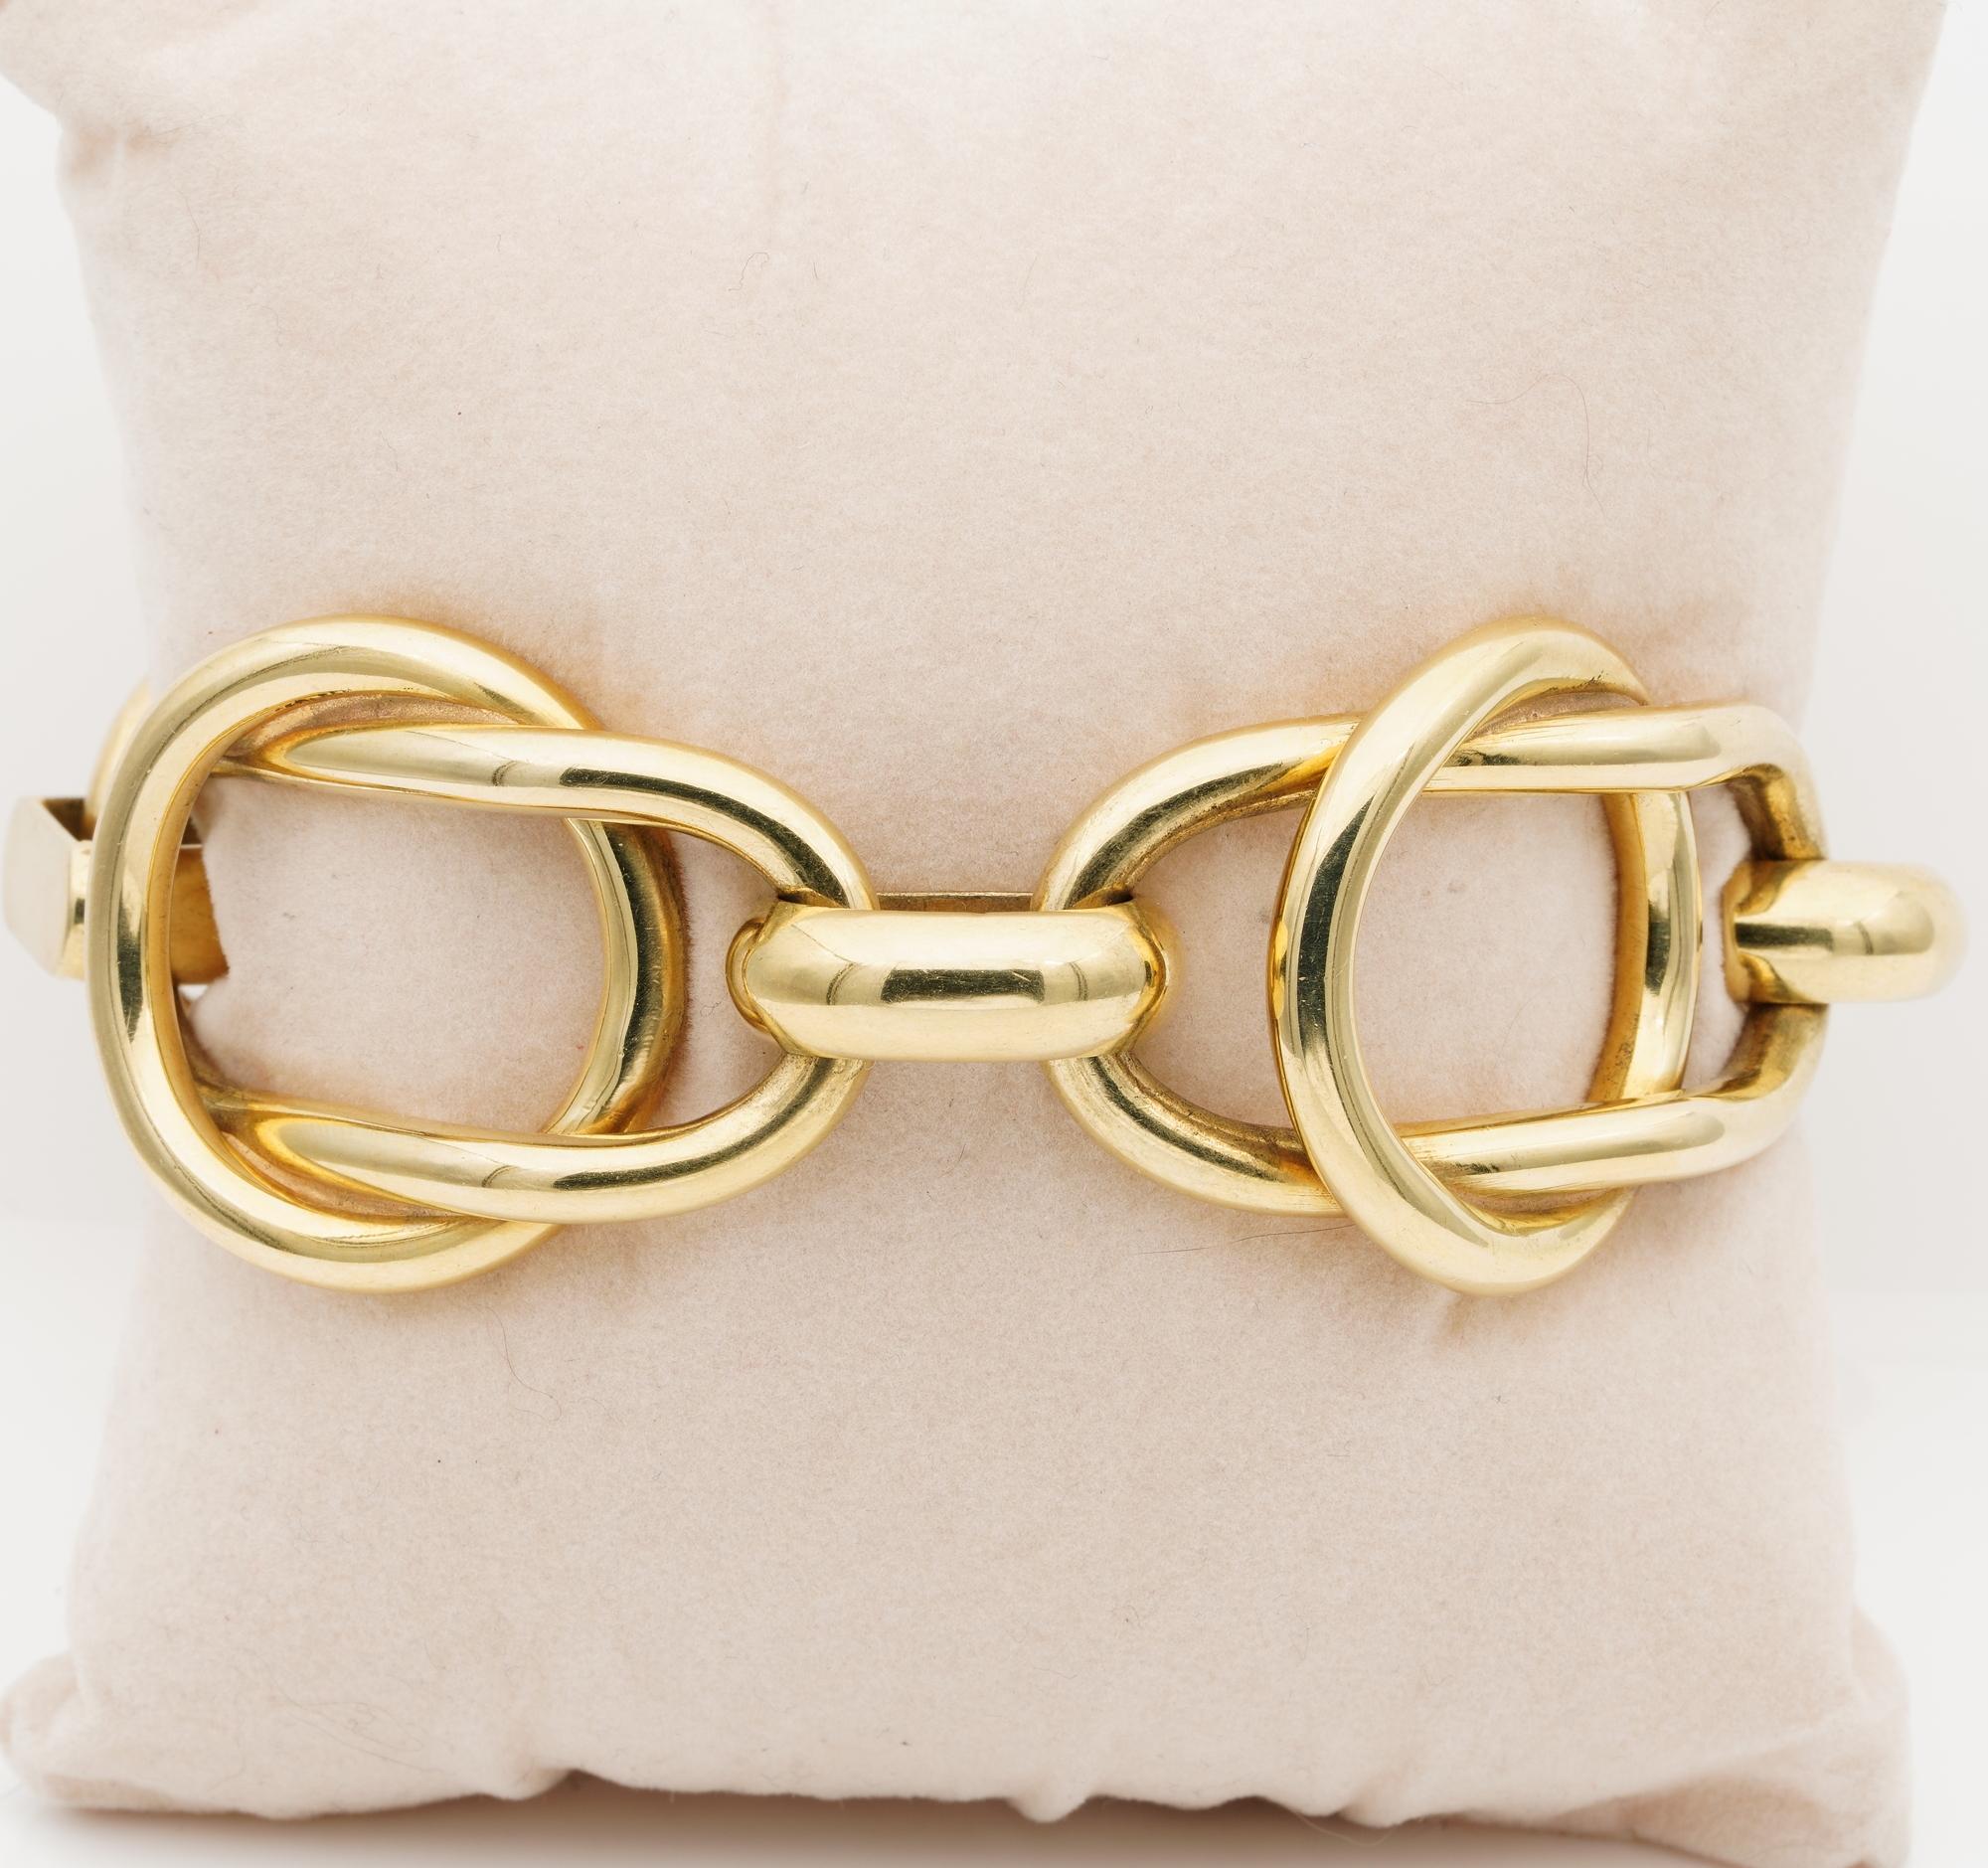 Profiter de l'or
Ce bracelet italien vintage à maillons fantaisie est très agréable à porter sur un jean ou une tenue habillée.
D'un poids substantiel de 62,8 grammes d'or massif 18 carats, cette élégante combinaison d'entrelacs entre deux formes de